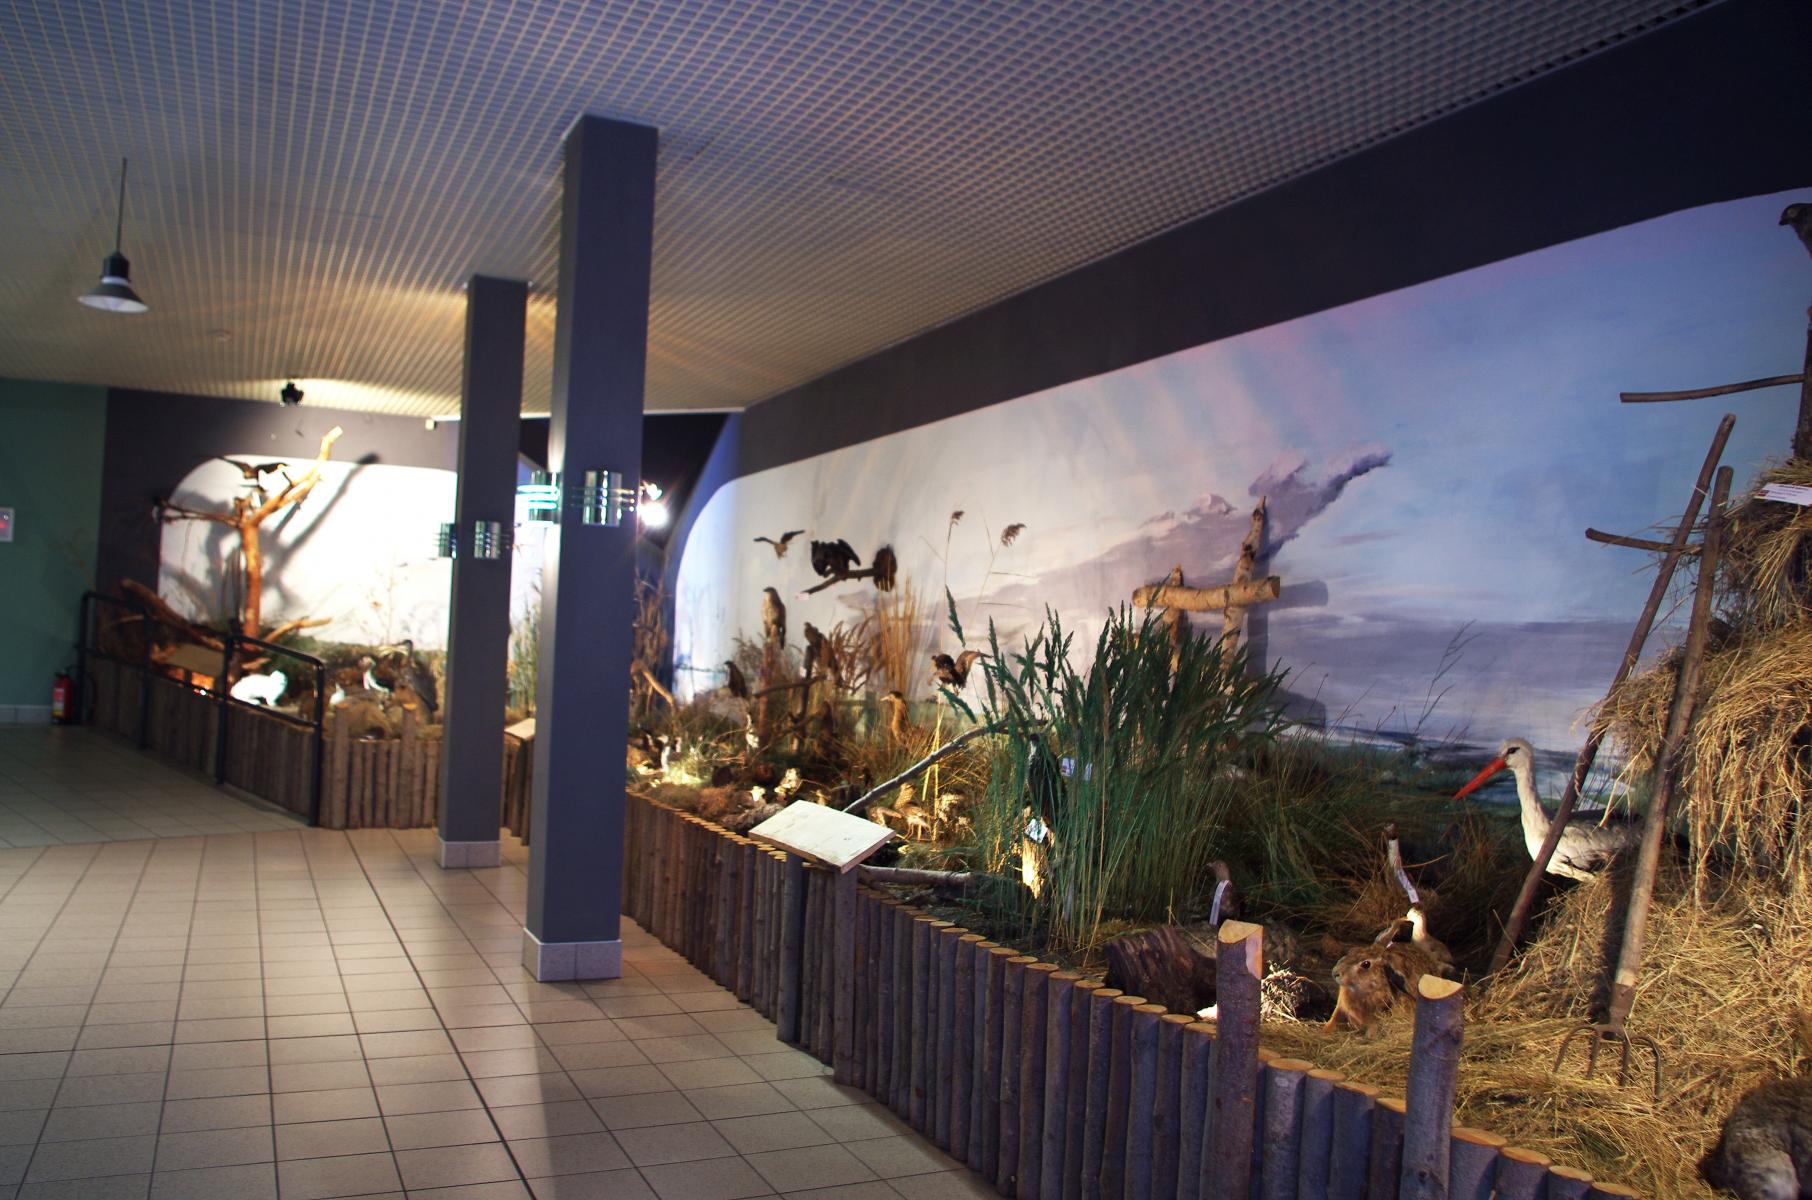 Muzeum Przyrodnicze Wolińskiego Parku Narodowego